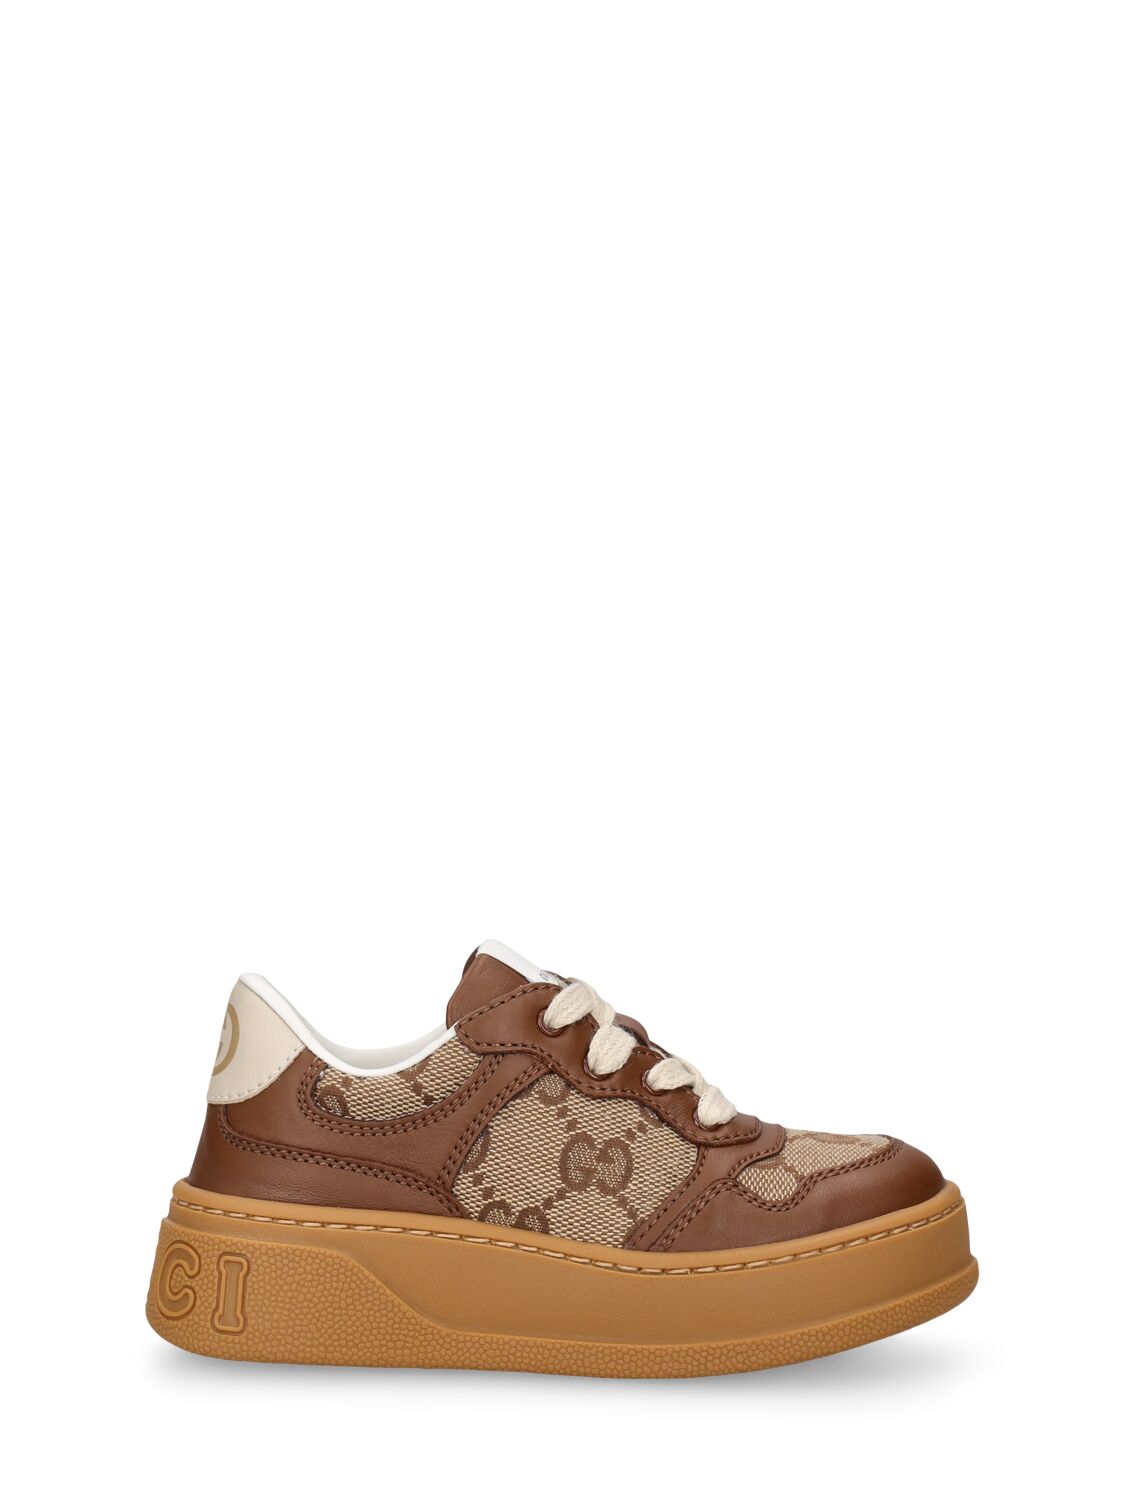 Gucci Kids' Gg Canvas & Leather Sneakers In Hazelnut,ebony